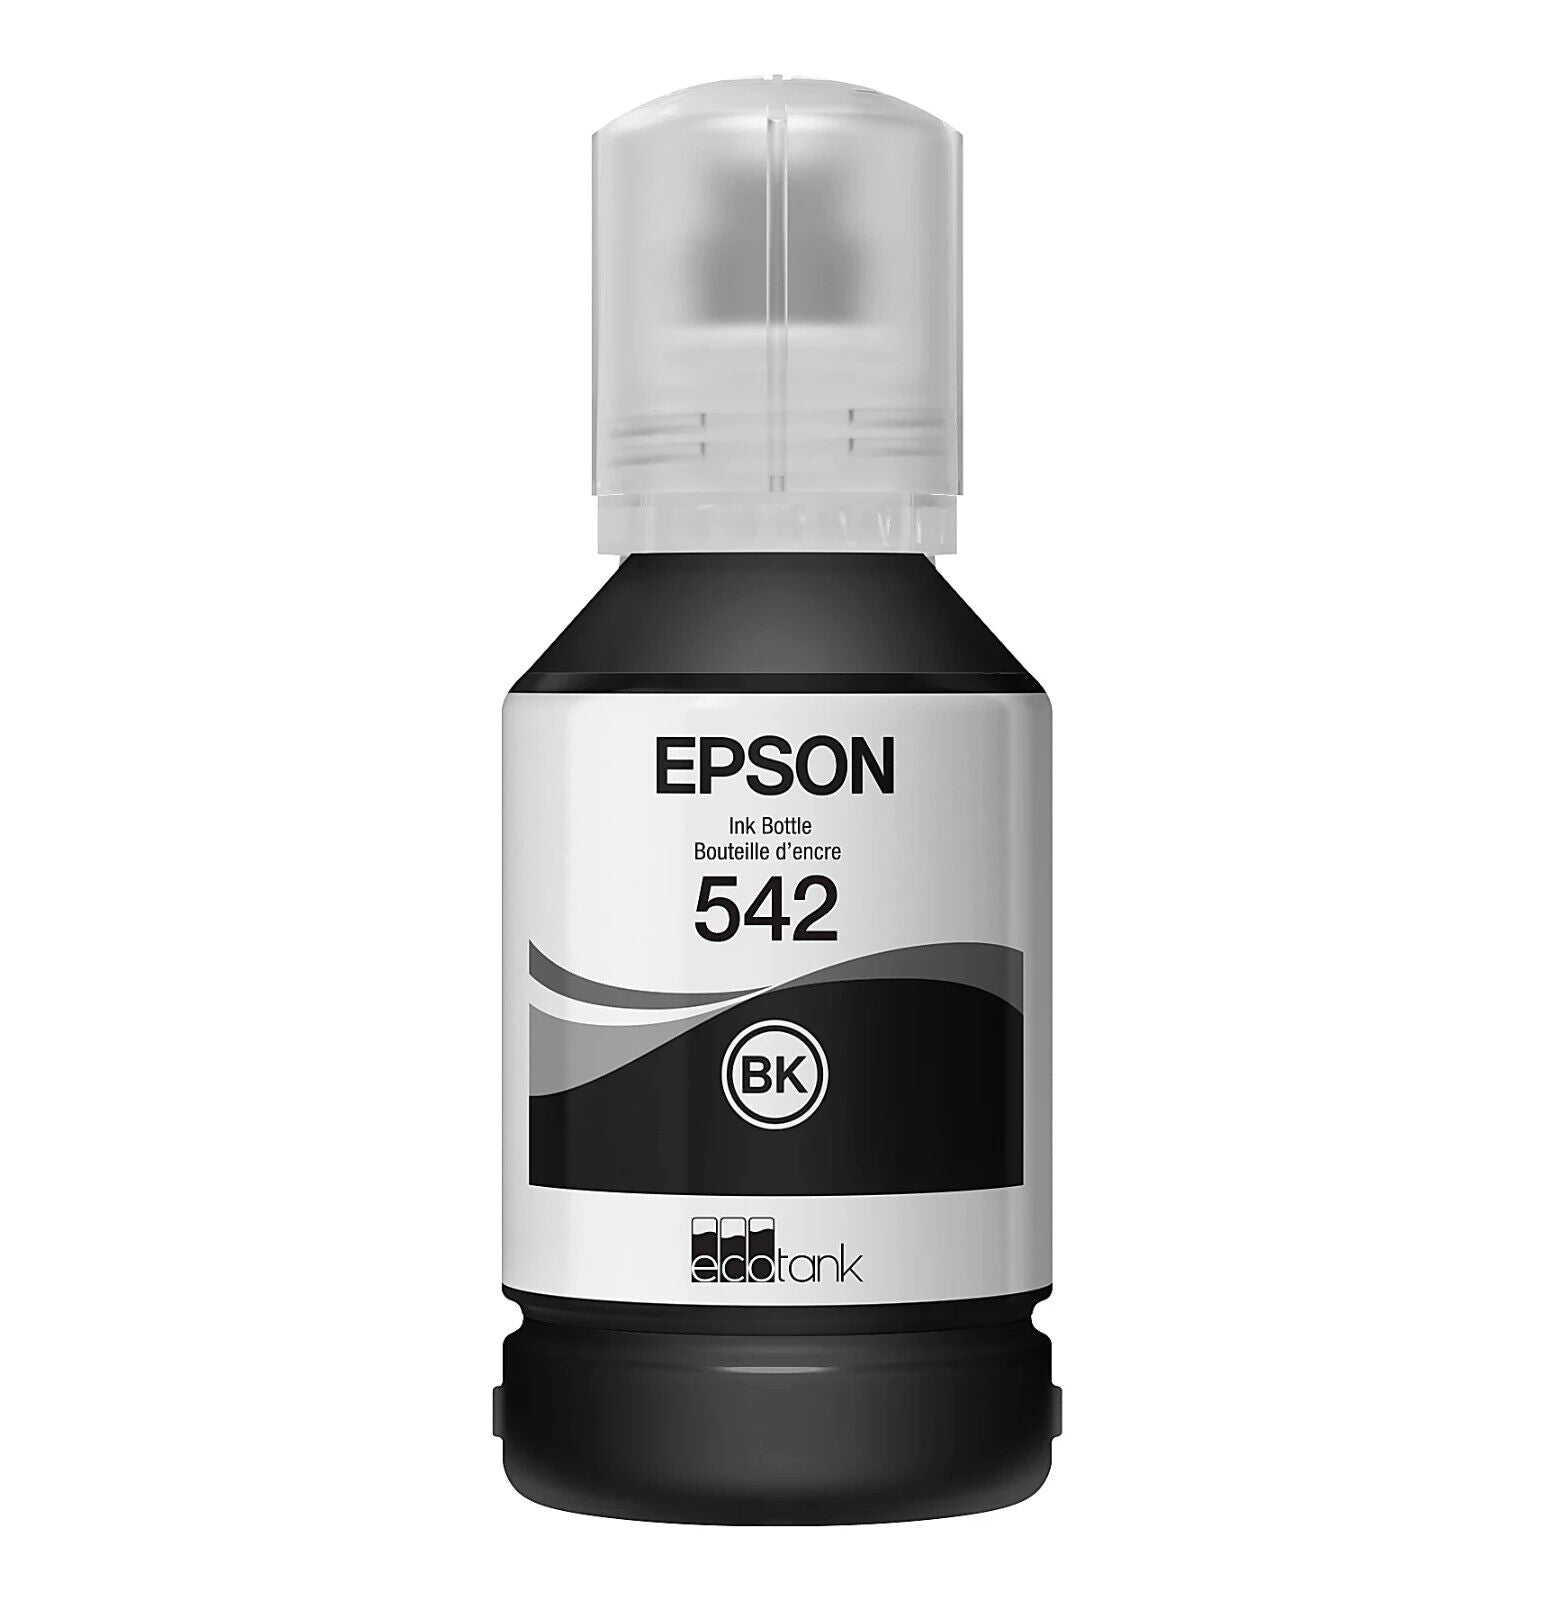 Epson T542 DURABRite EcoTank Refill Pigment Ink Black